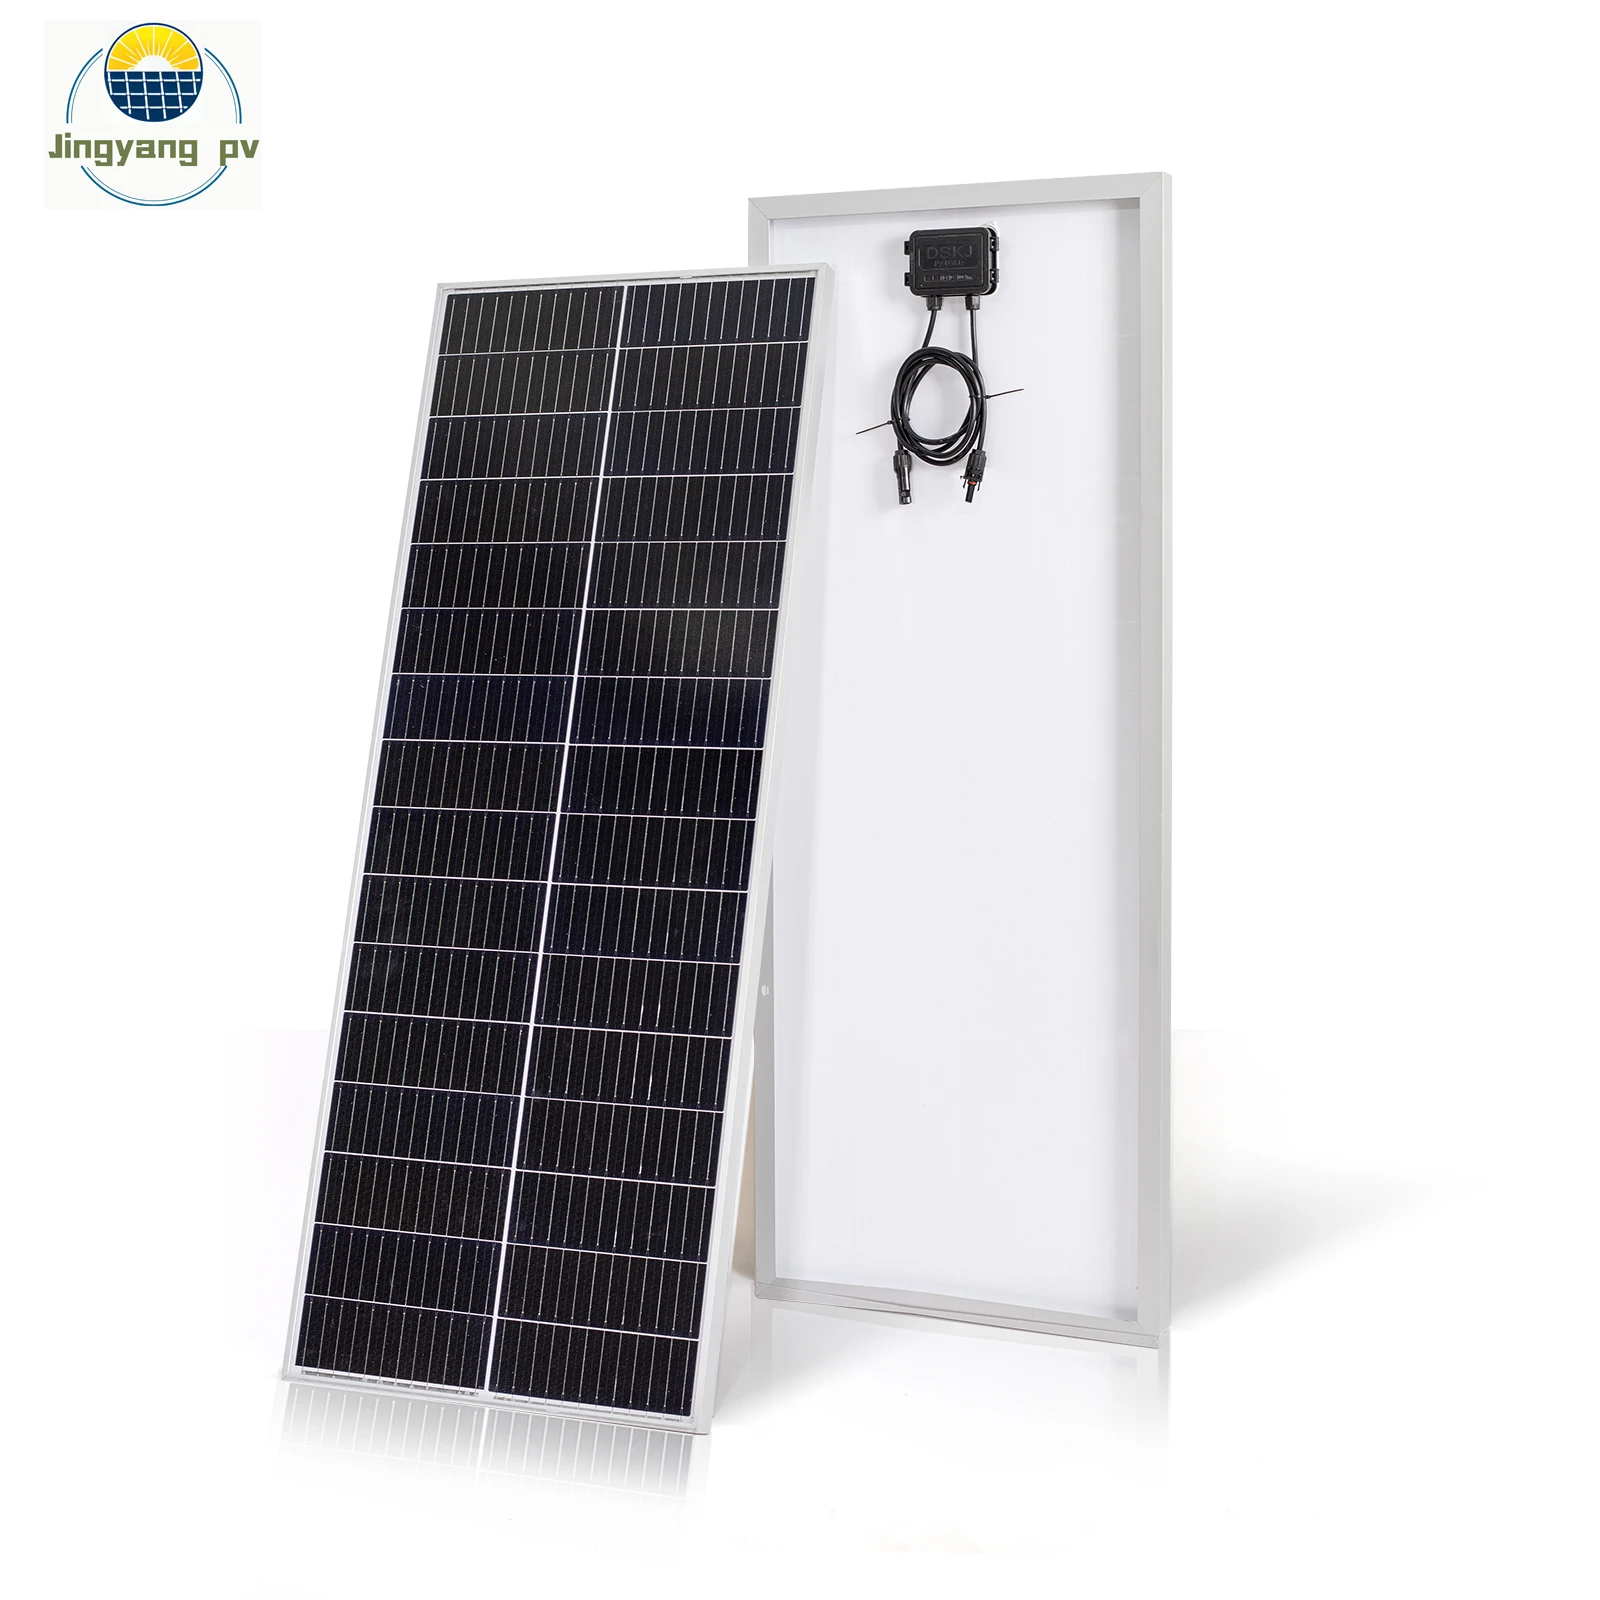 

100 Вт maxmumpower120W стеклянные солнечные панели 18 в для 12 в аккумуляторной системы зарядное устройство жесткое закаленное стекло солнечная батарея для дома кемпинга лодки